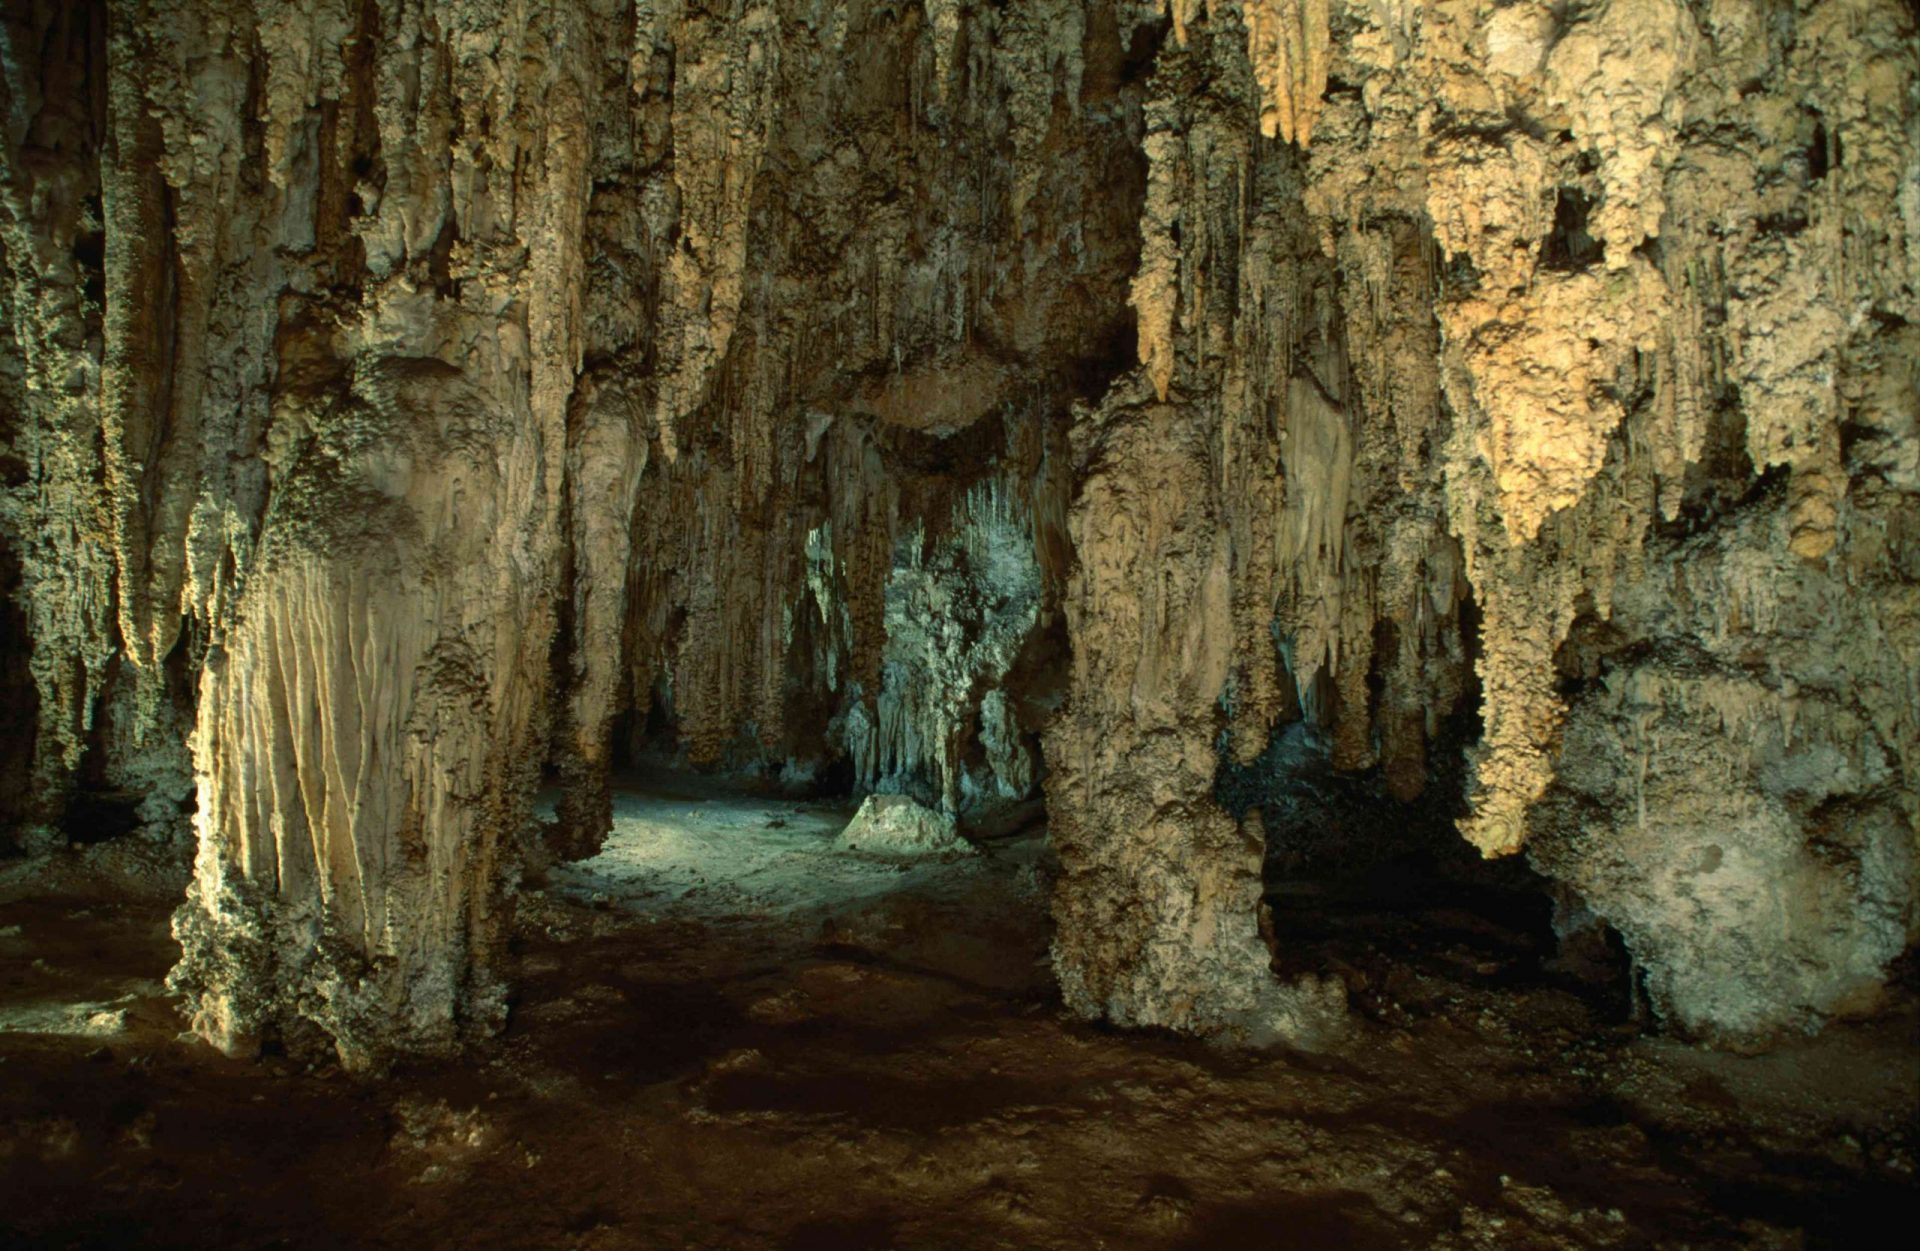 inusuales formaciones rocosas en el interior de la cueva de las Cavernas de Carlsbad